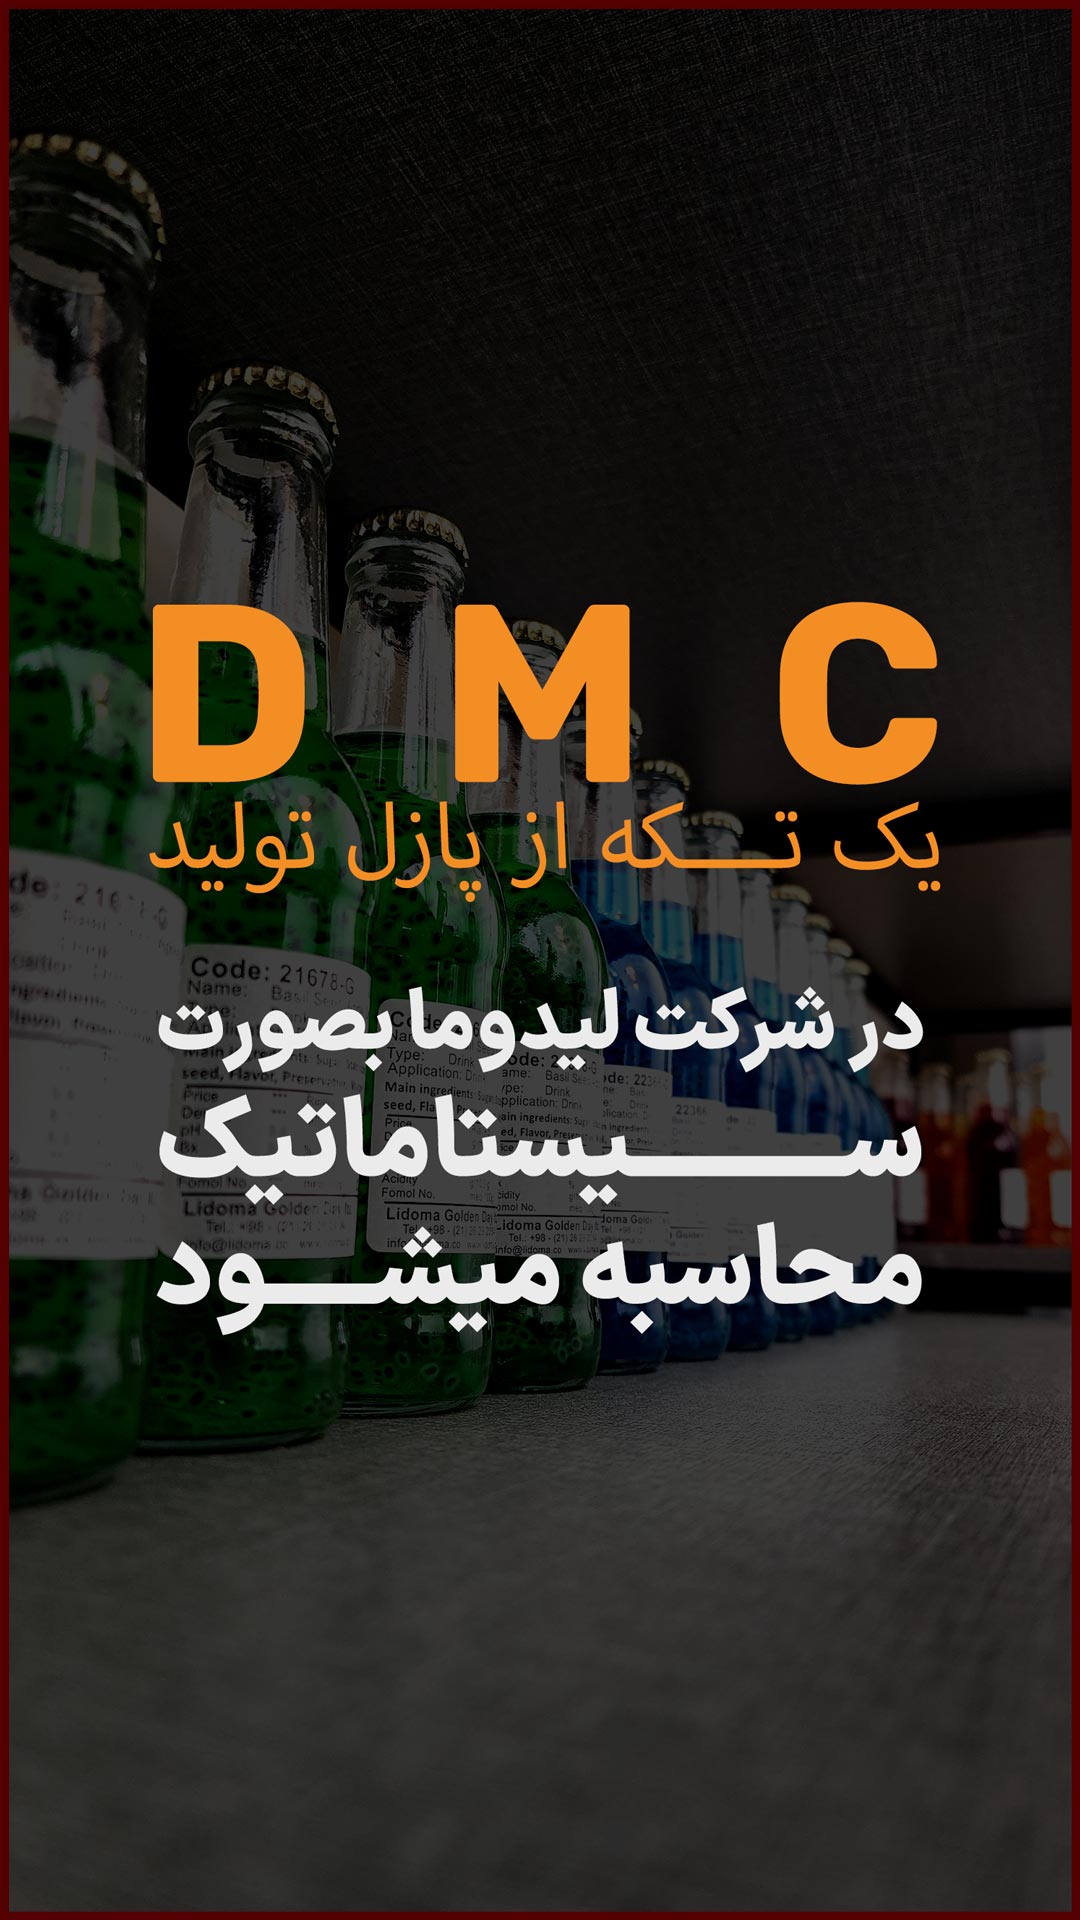 DMC یا هزینه مواداولیه یک فرمول غذایی که برای تولید آن باید خریداری شود.